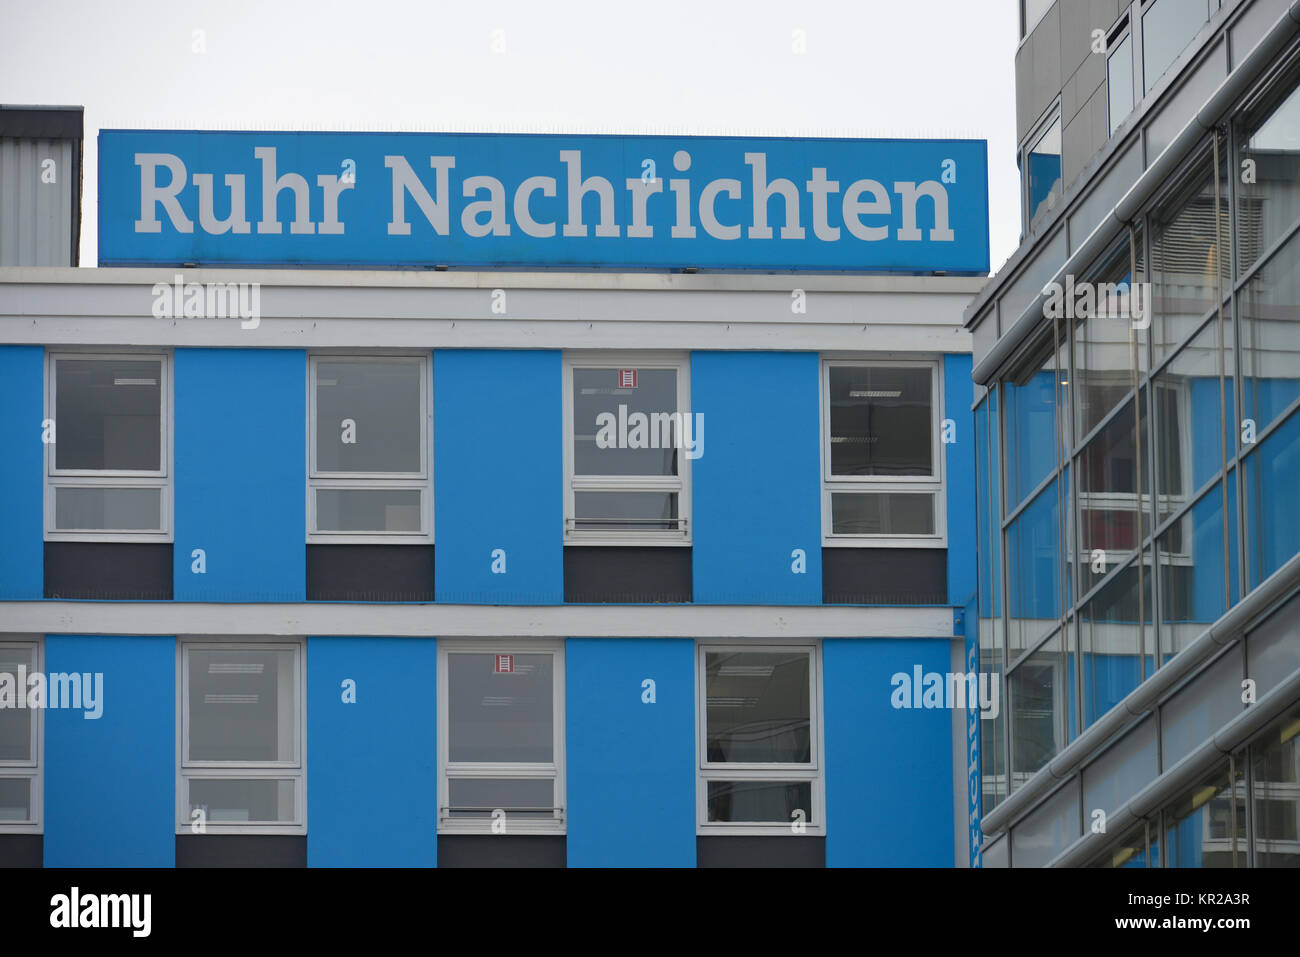 Ruhr news, Silberstrasse, Dortmund, North Rhine-Westphalia, Germany, Ruhr Nachrichten, Nordrhein-Westfalen, Deutschland Stock Photo